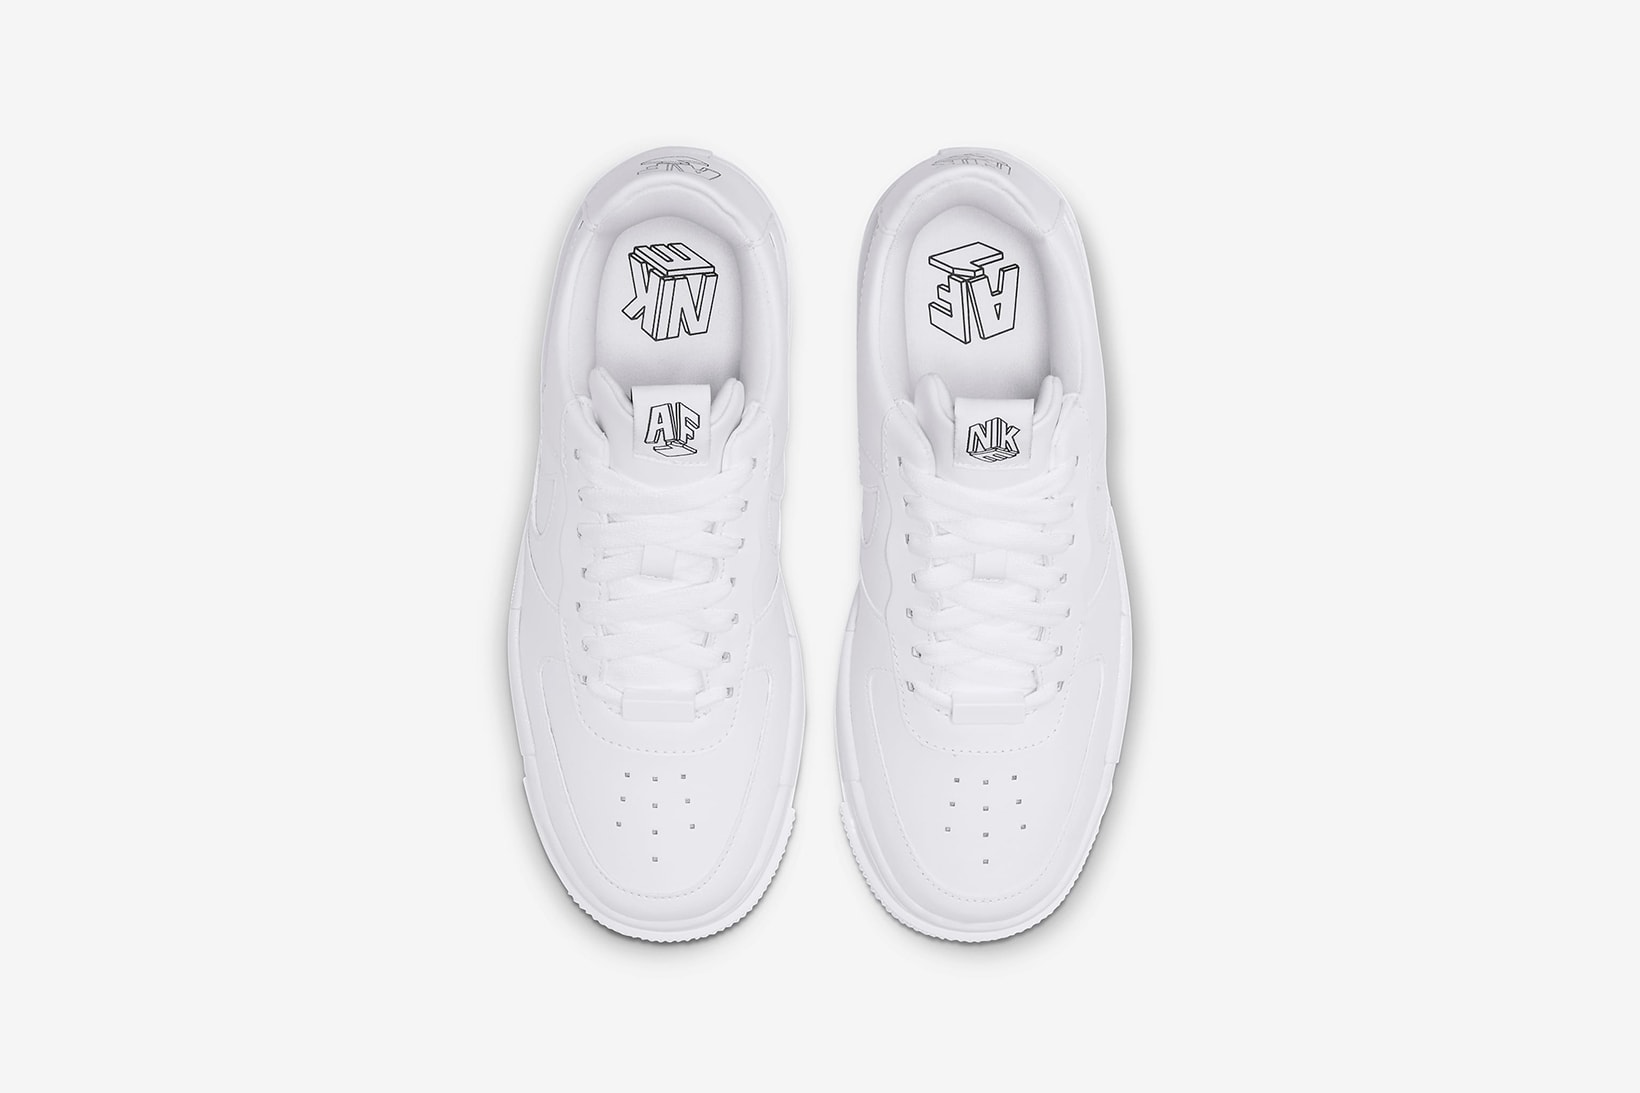 nike air force 1 pixel womens sneakers white colorway sneakerhead footwear shoes